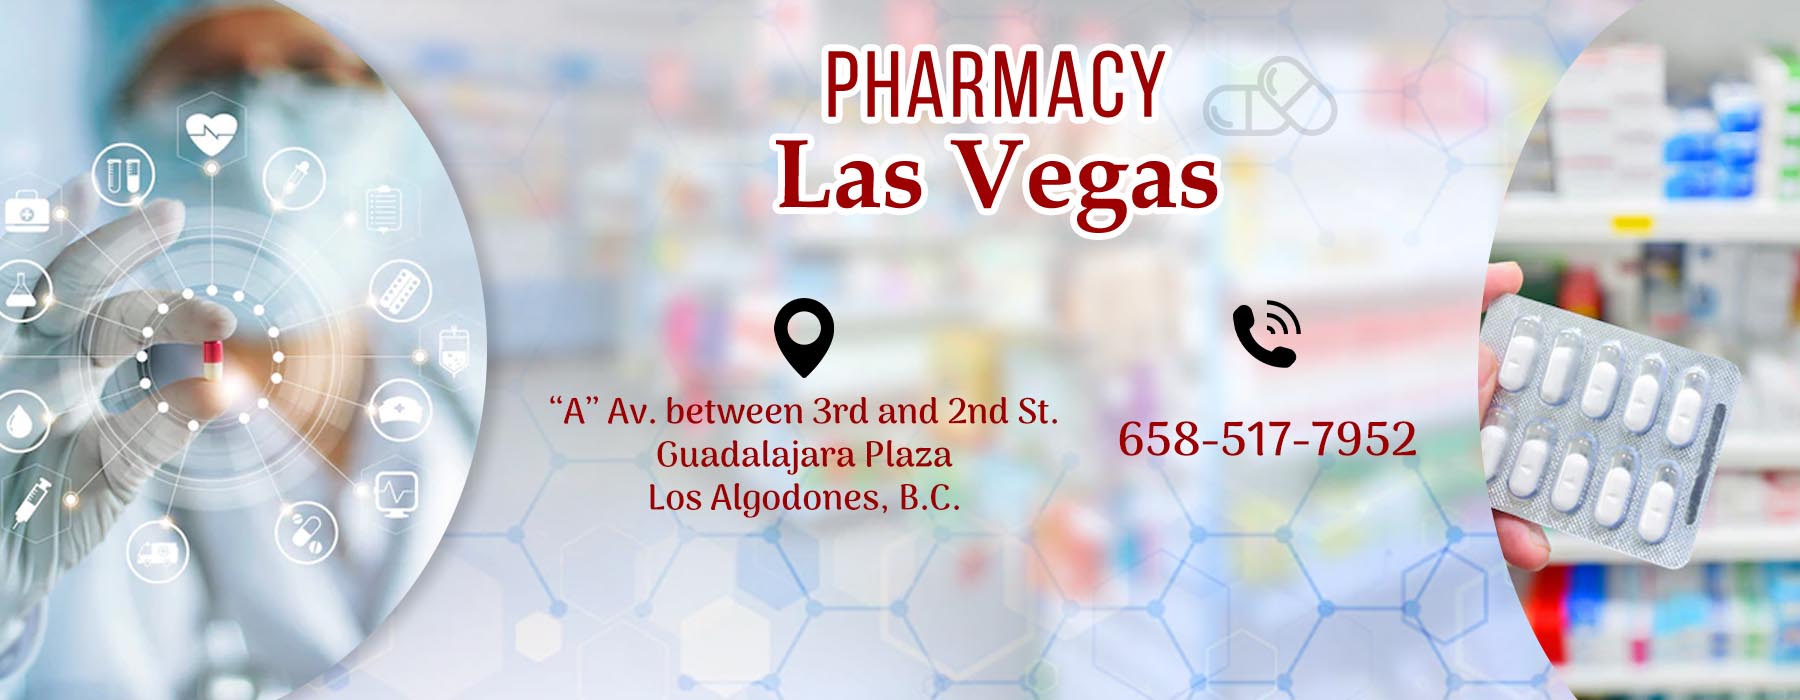  Farmacia Las Vegas